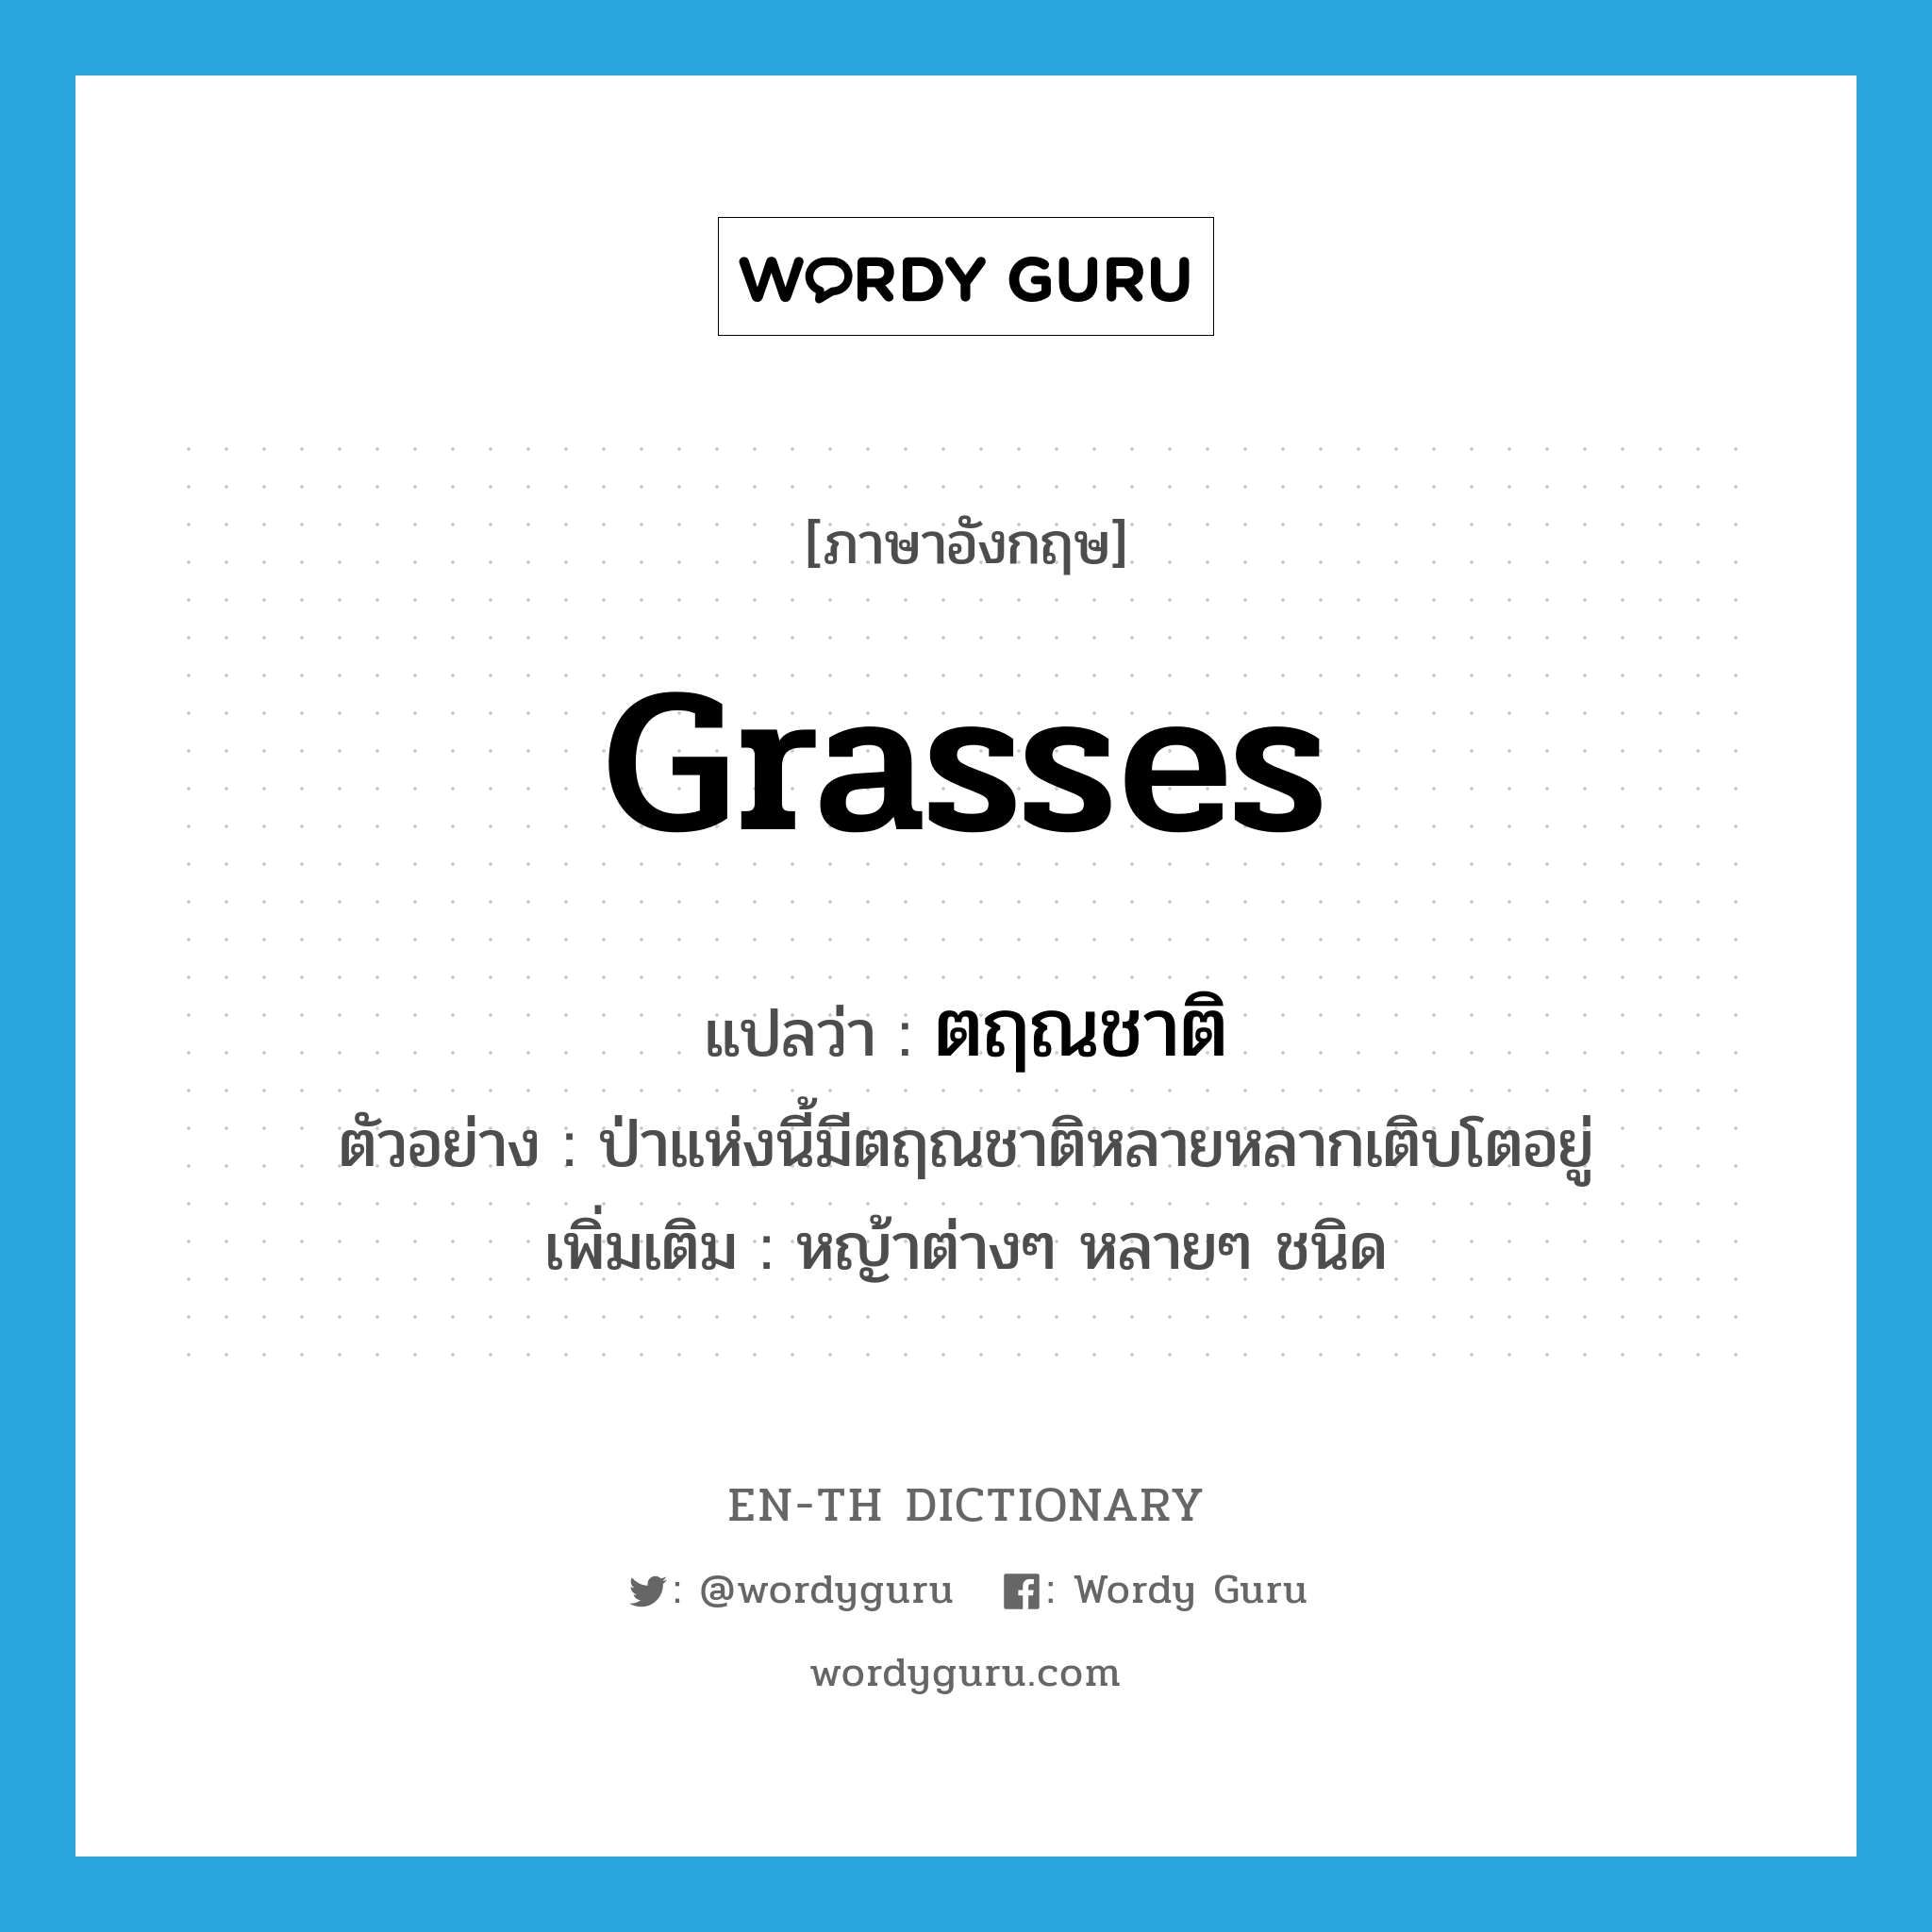 grasses แปลว่า?, คำศัพท์ภาษาอังกฤษ grasses แปลว่า ตฤณชาติ ประเภท N ตัวอย่าง ป่าแห่งนี้มีตฤณชาติหลายหลากเติบโตอยู่ เพิ่มเติม หญ้าต่างๆ หลายๆ ชนิด หมวด N